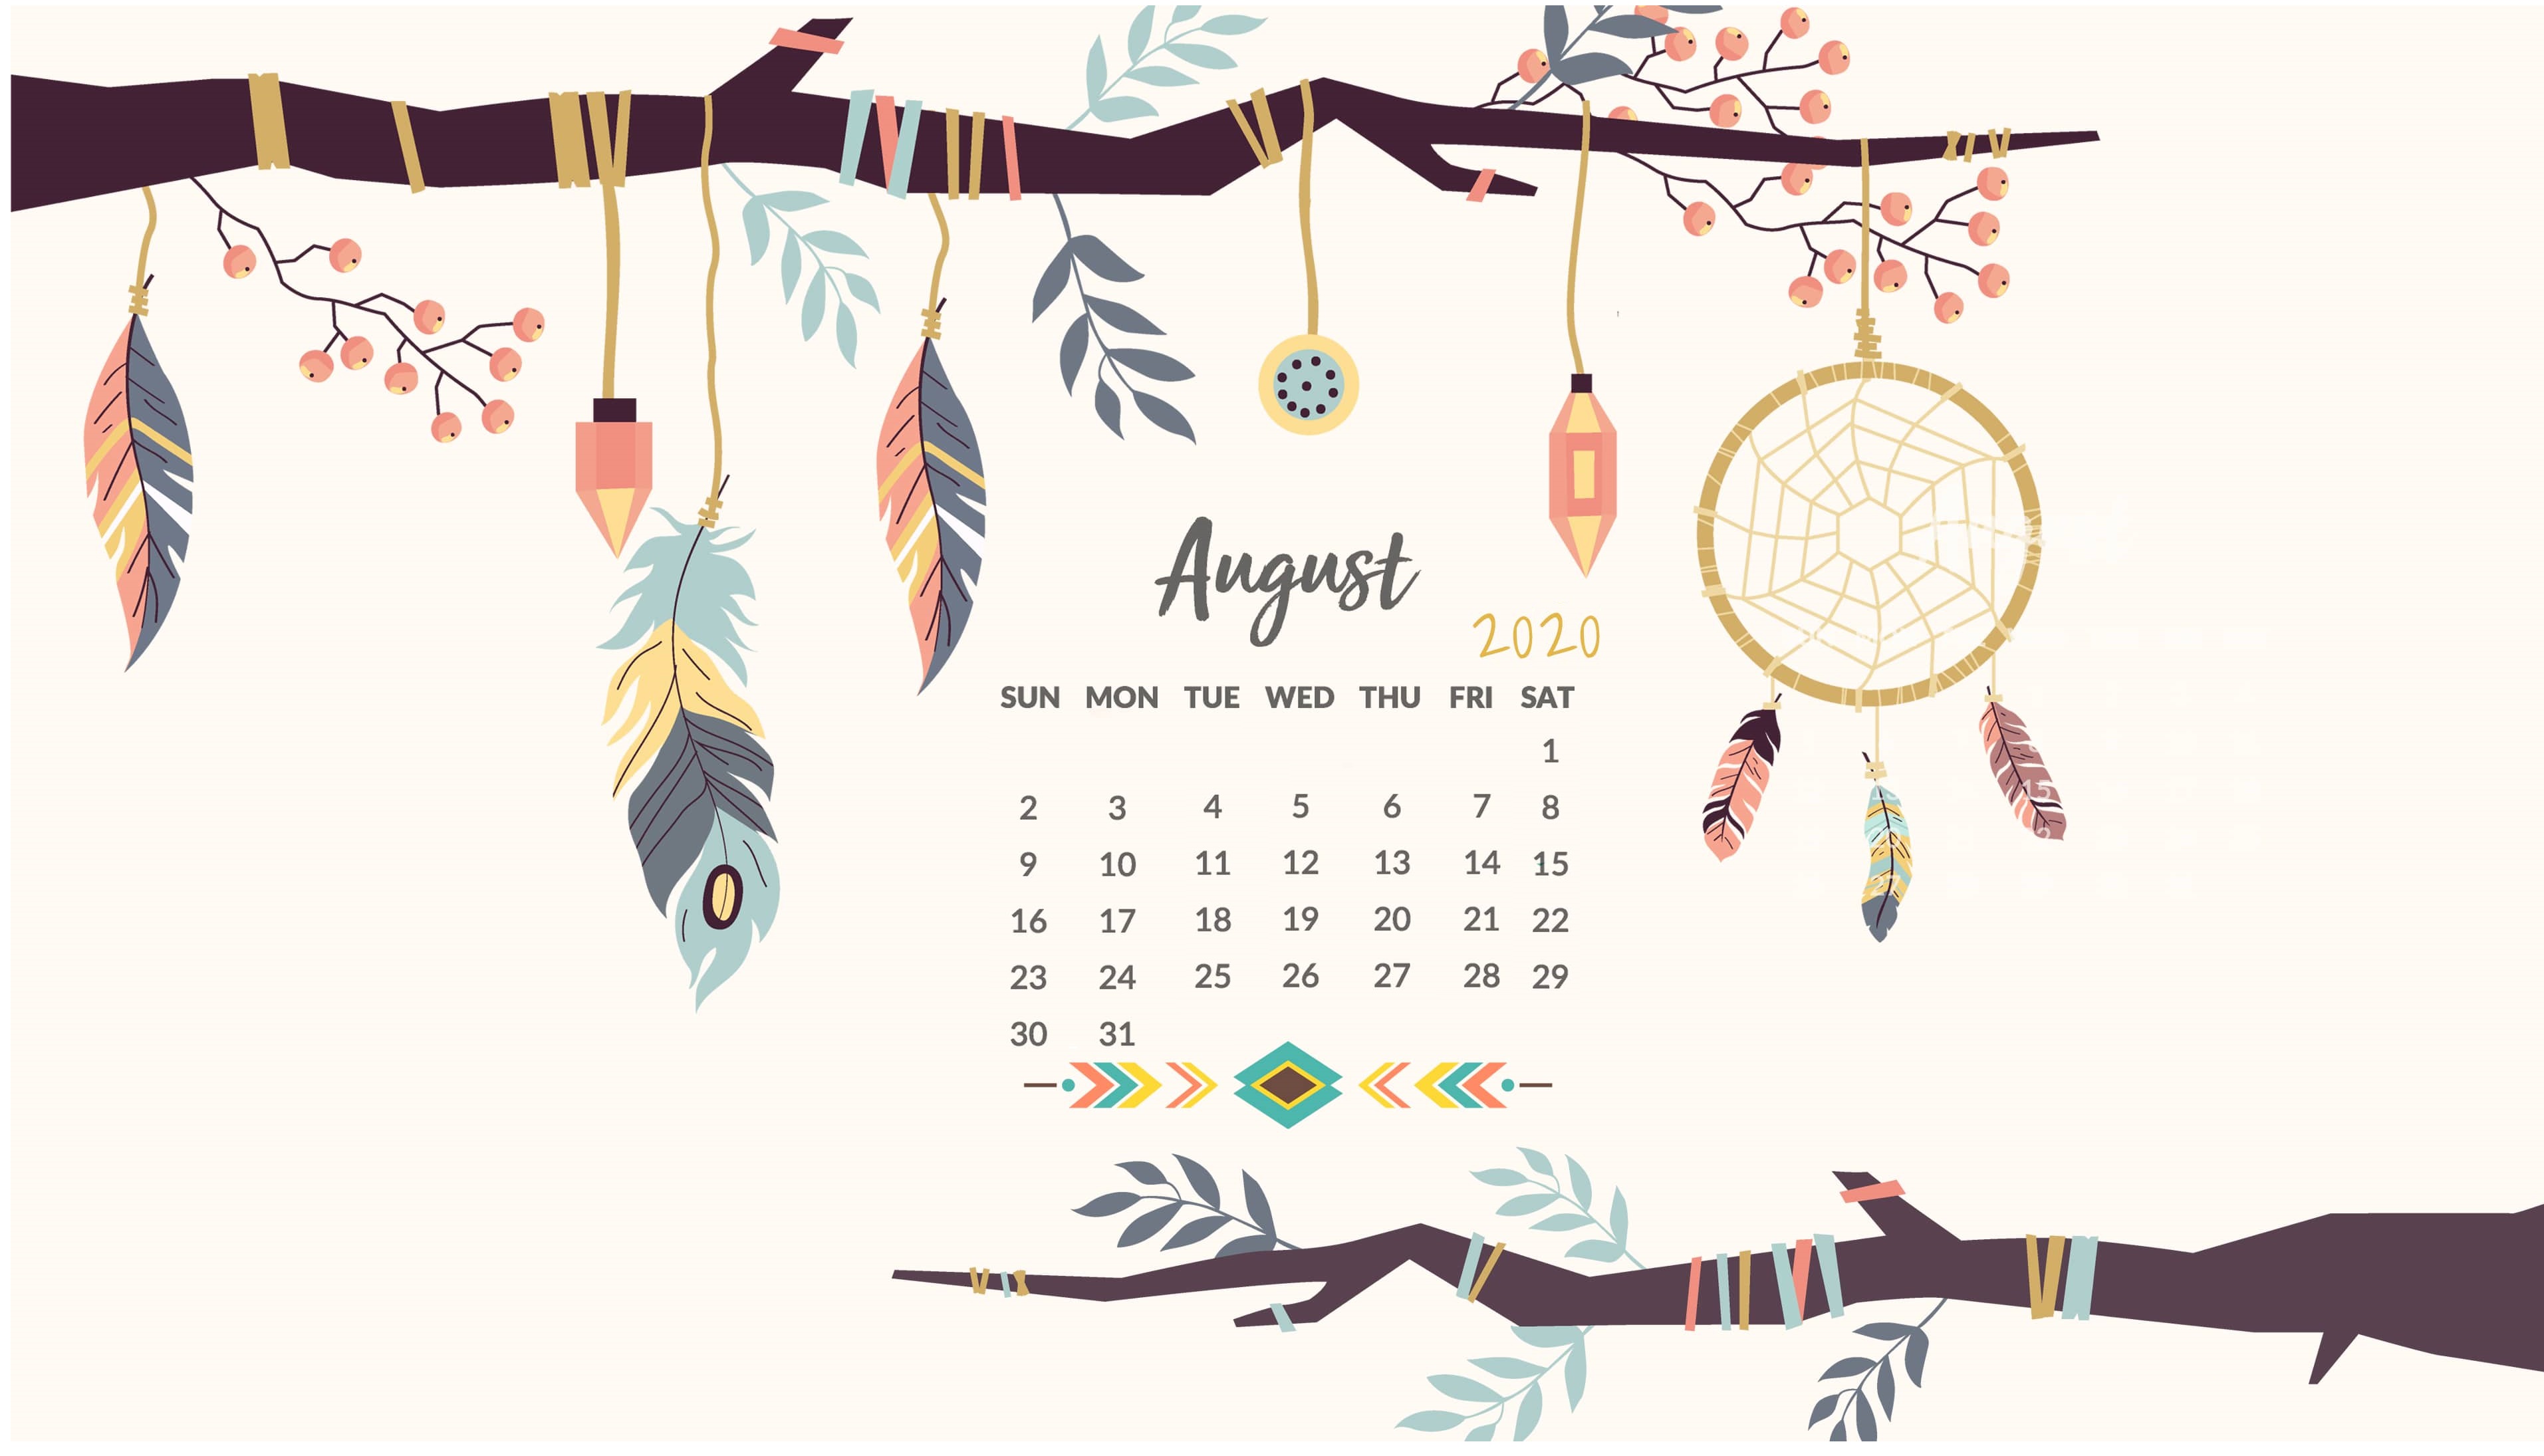 Cute 2020 Desktop Calendar Wallpaper Latest Calendar